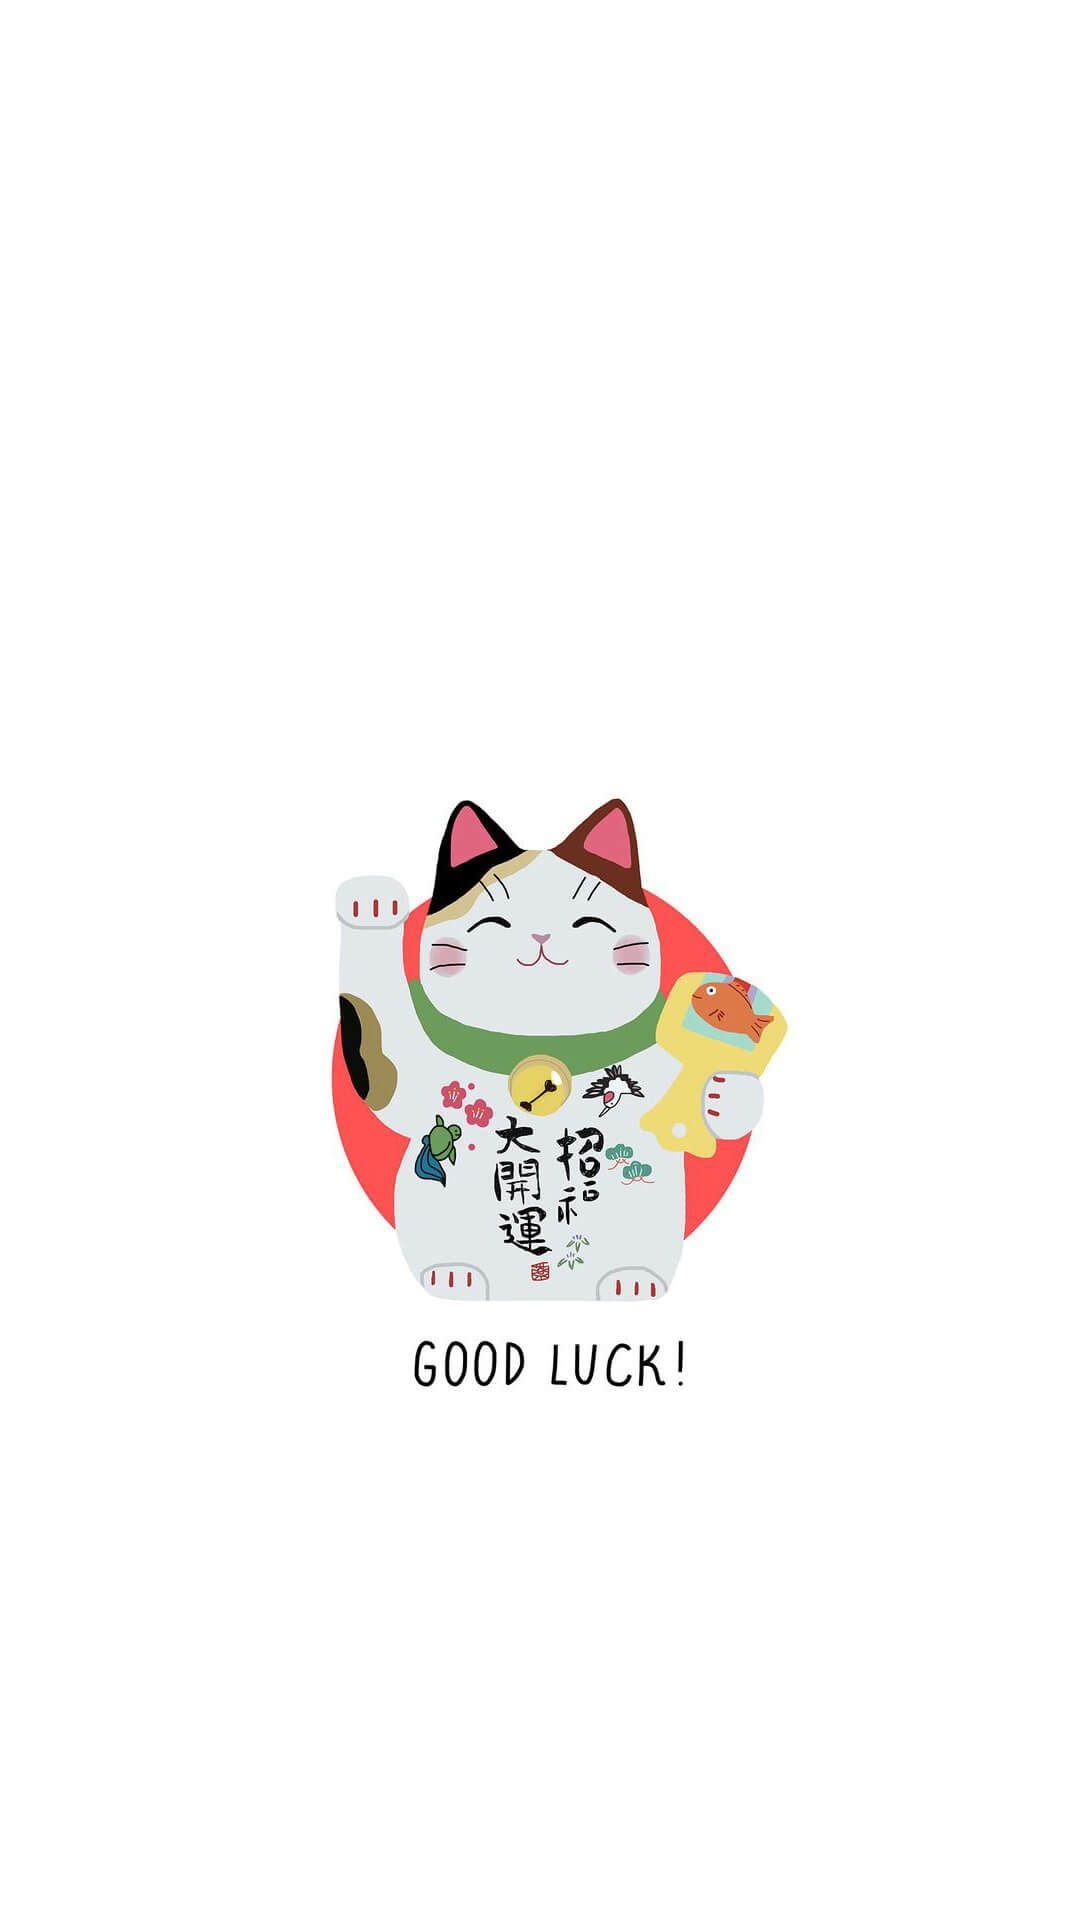 Japanese Lucky Cat, Cute phone wallpaper, Love lucky, Cute patterns, 1080x1920 Full HD Handy